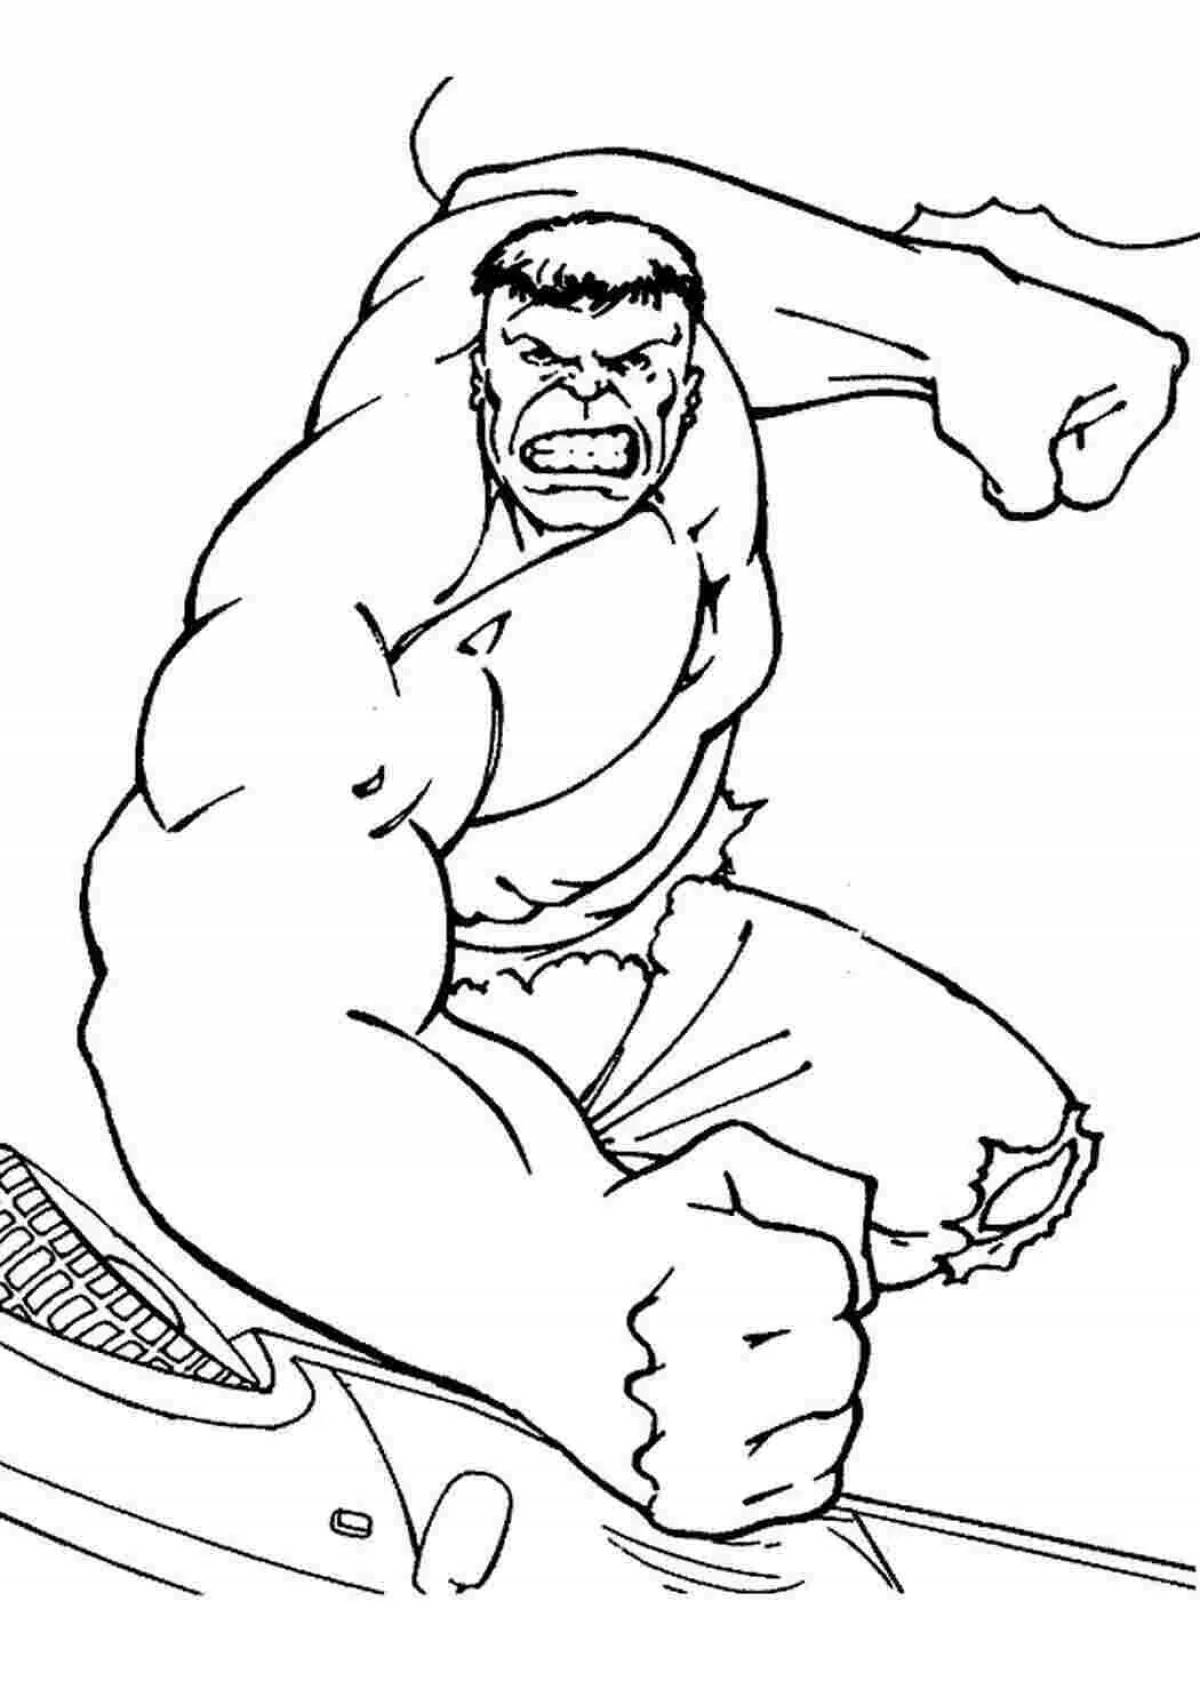 Generous Hulk coloring page